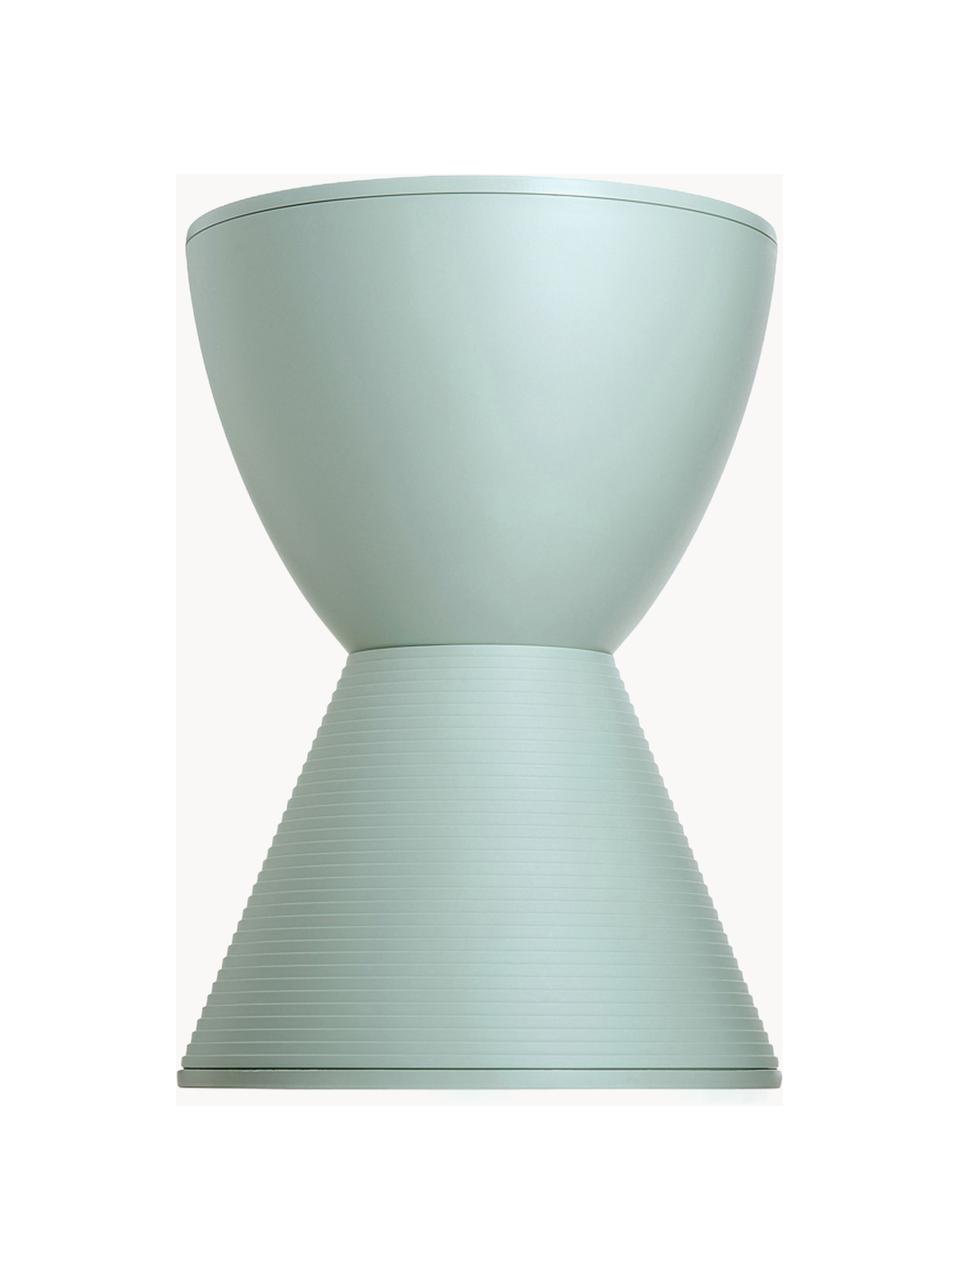 Stołek/stolik pomocniczy Prince AHA, Pigmentowany polipropylen, Szałwiowy zielony, Ø 30 x W 43 cm